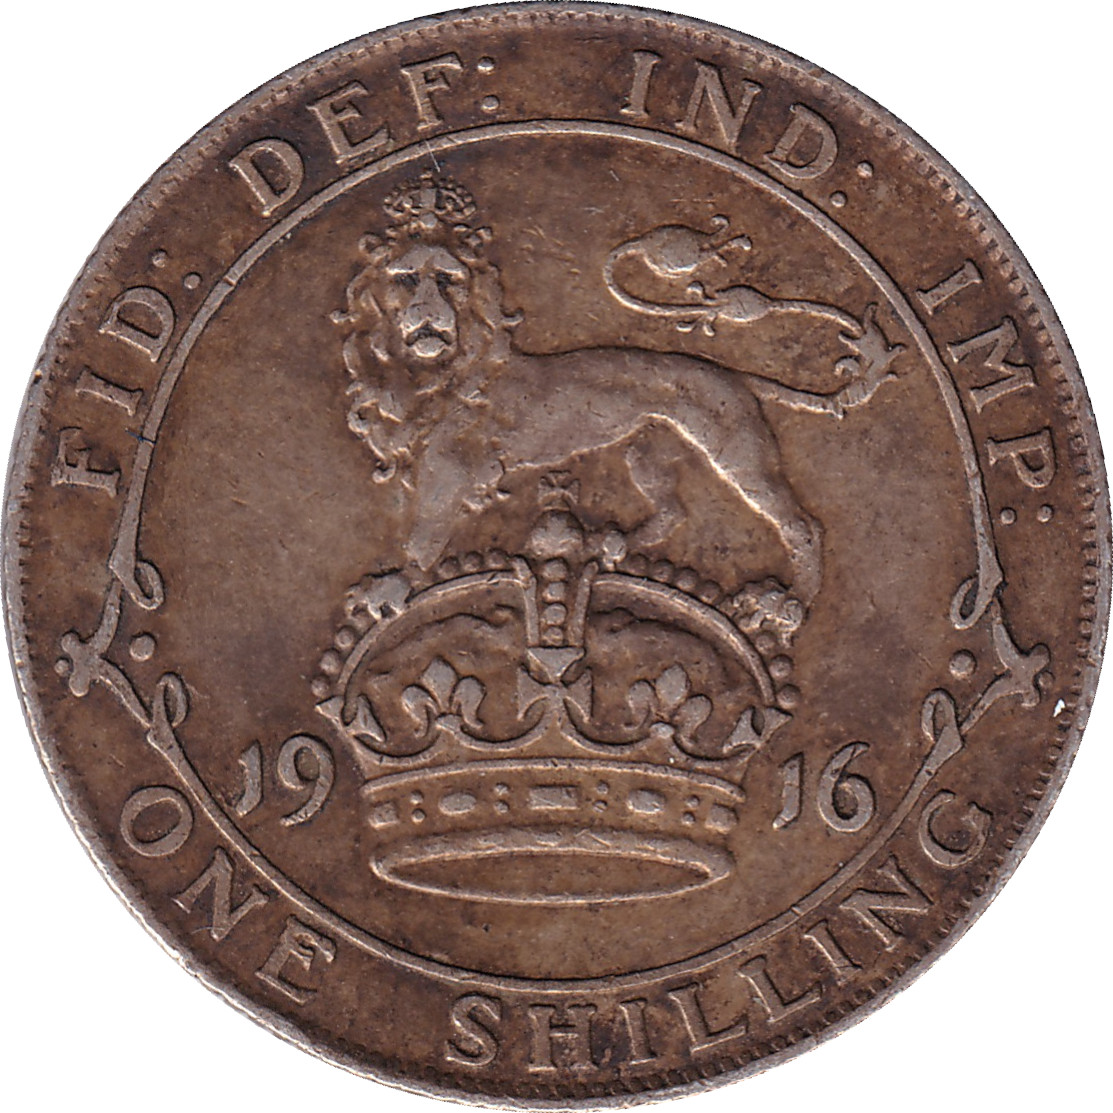 1 shilling - Georges V - Lion et couronne